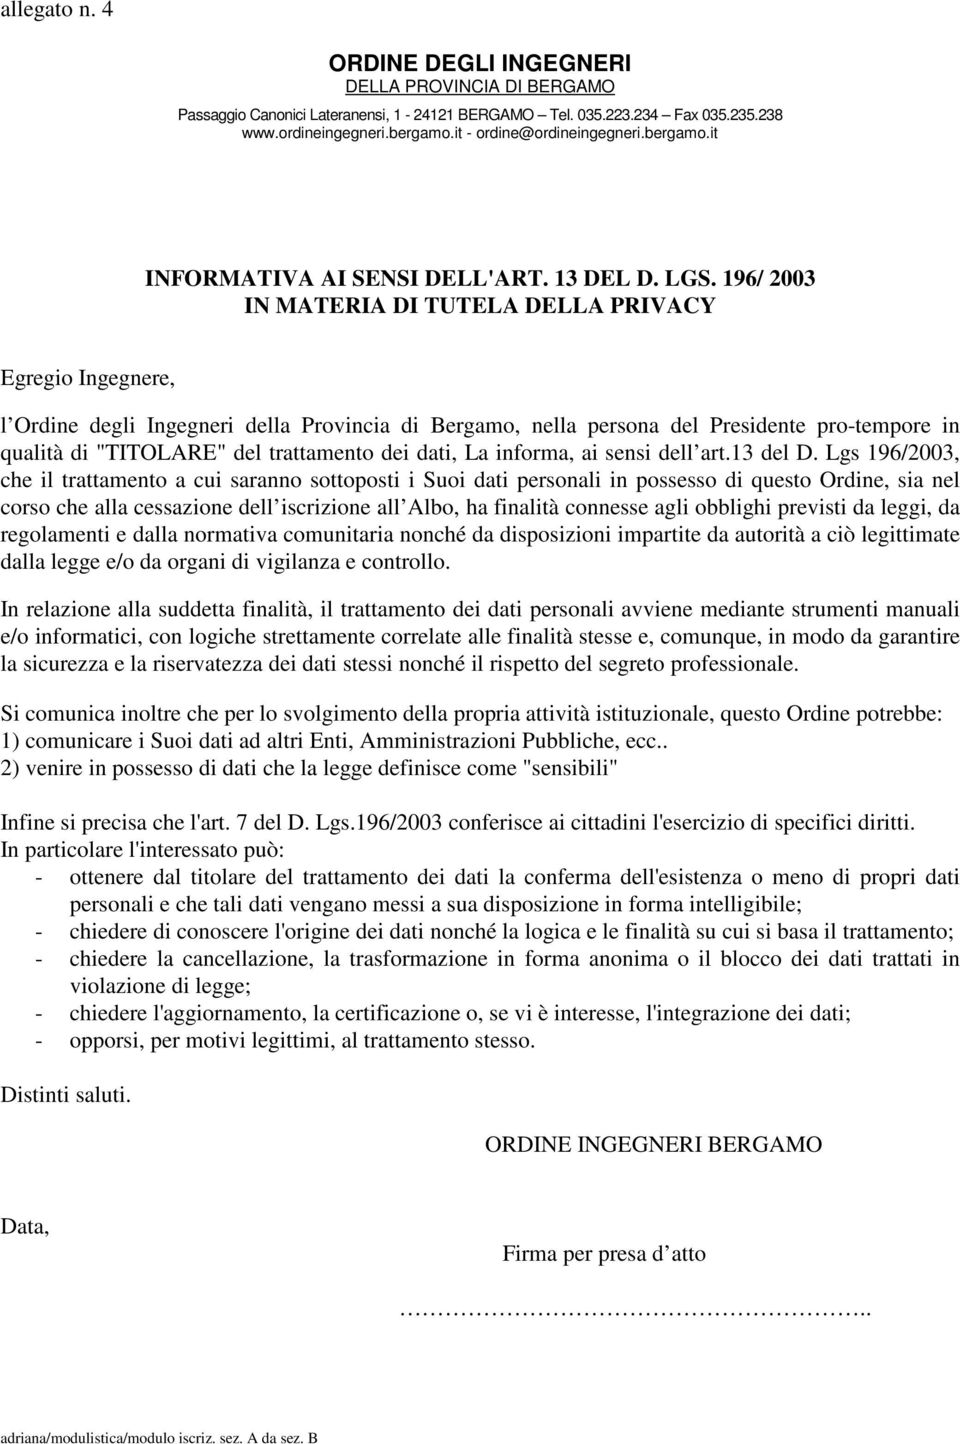 196/ 2003 IN MATERIA DI TUTELA DELLA PRIVACY Egregio Ingegnere, l Ordine degli Ingegneri della Provincia di Bergamo, nella persona del Presidente pro-tempore in qualità di "TITOLARE" del trattamento